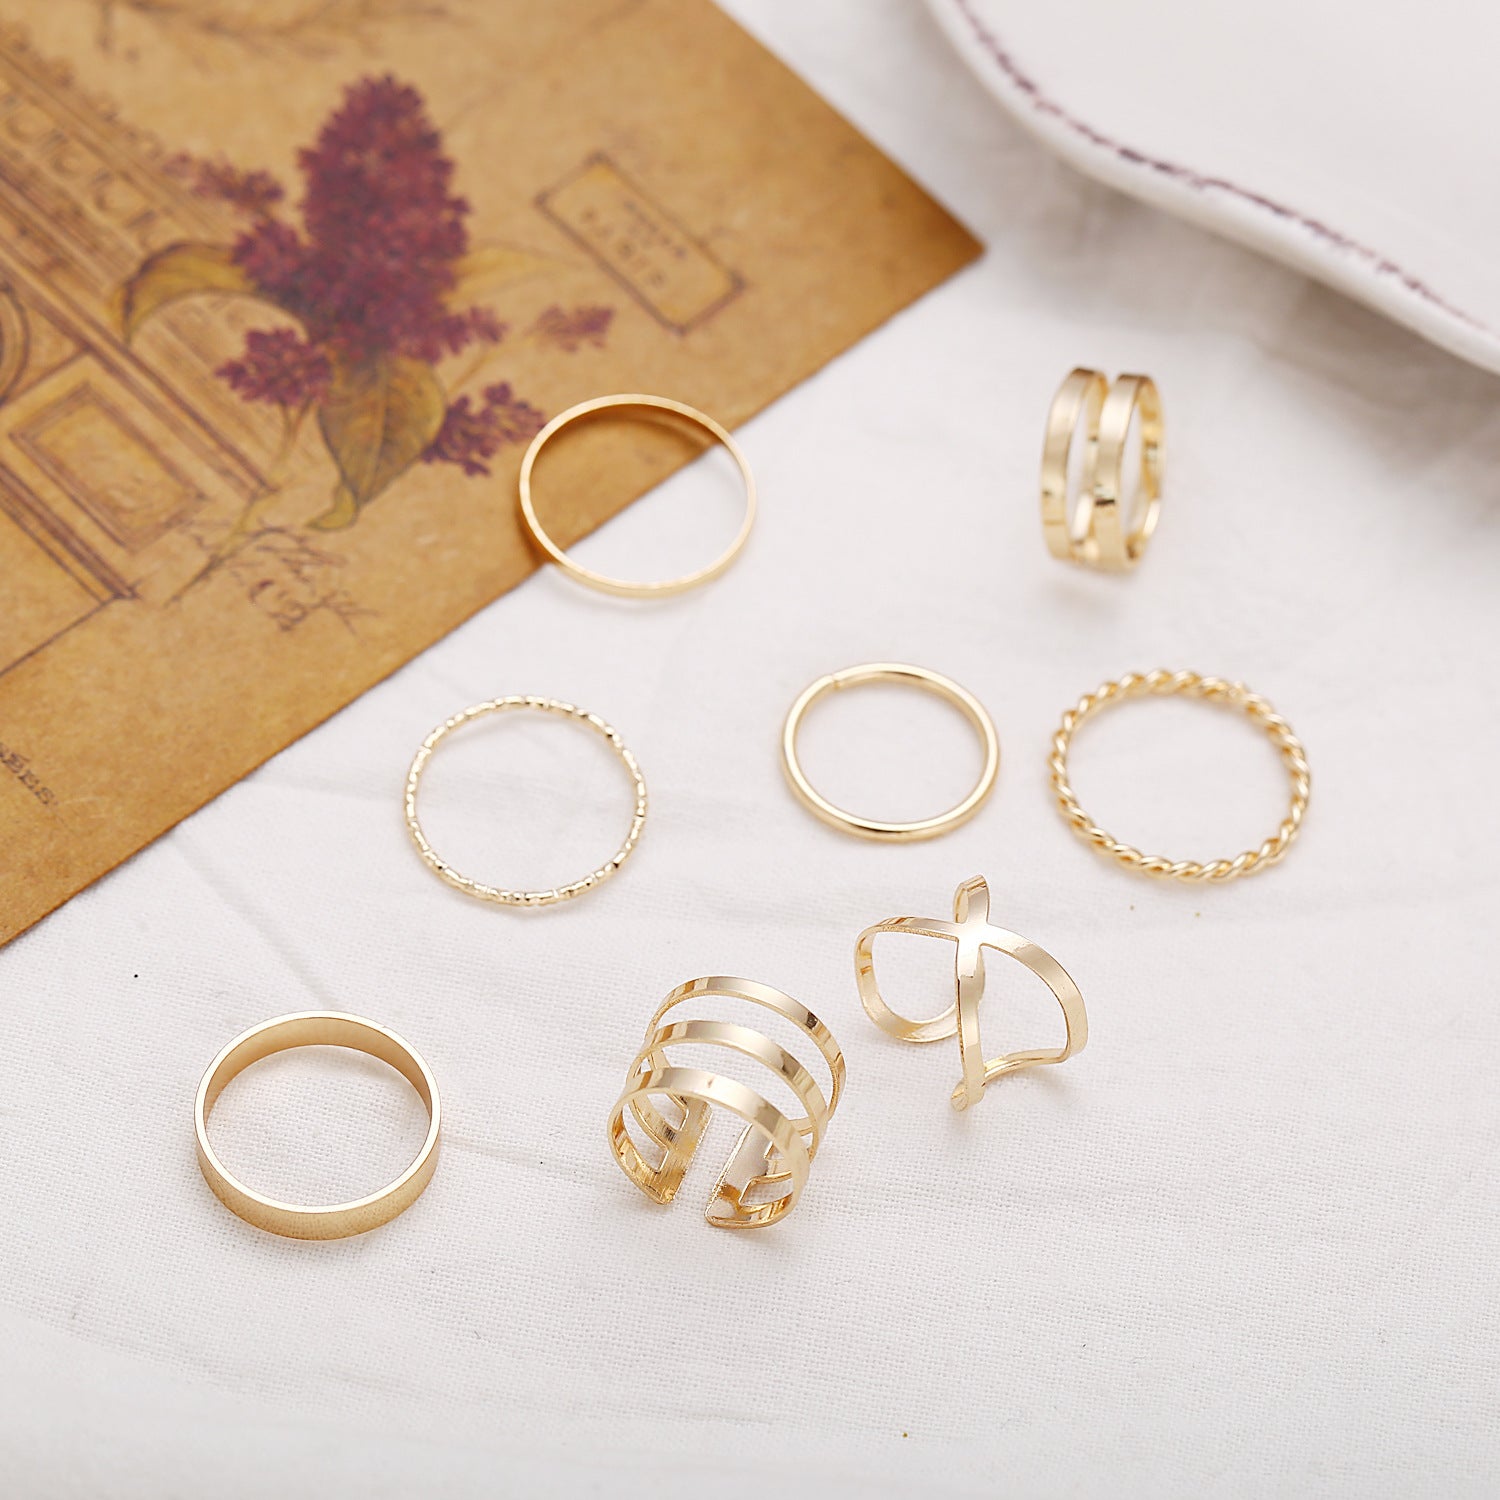 Buy ZEELLO copper finger ring| Finger ring design silver|Finger ring silver new  design Online at Best Prices in India - JioMart.